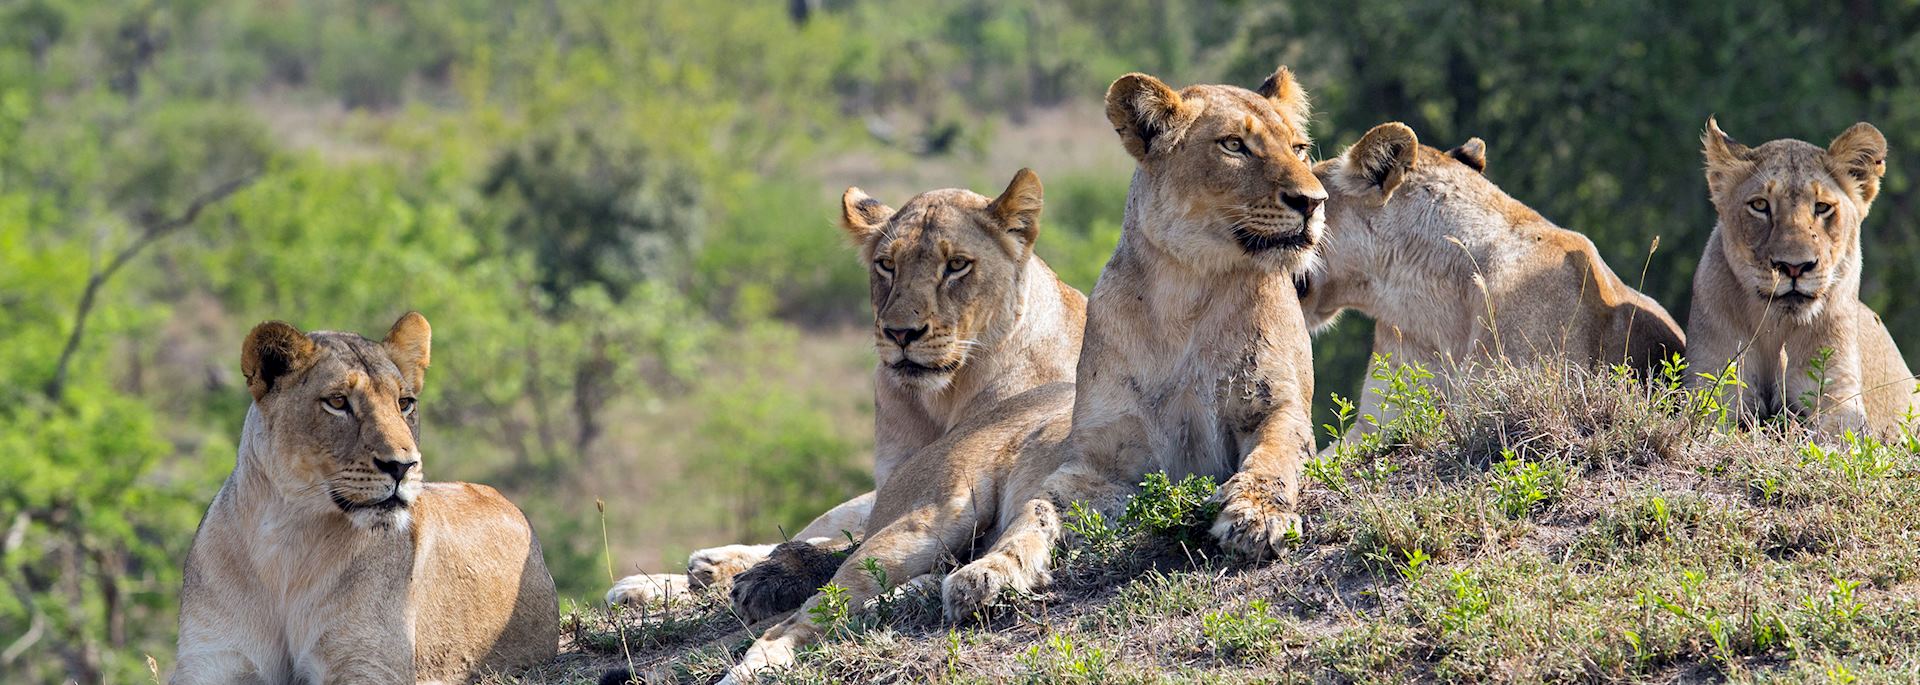 Lion, Sabi Sands Game Reserve, South Africa